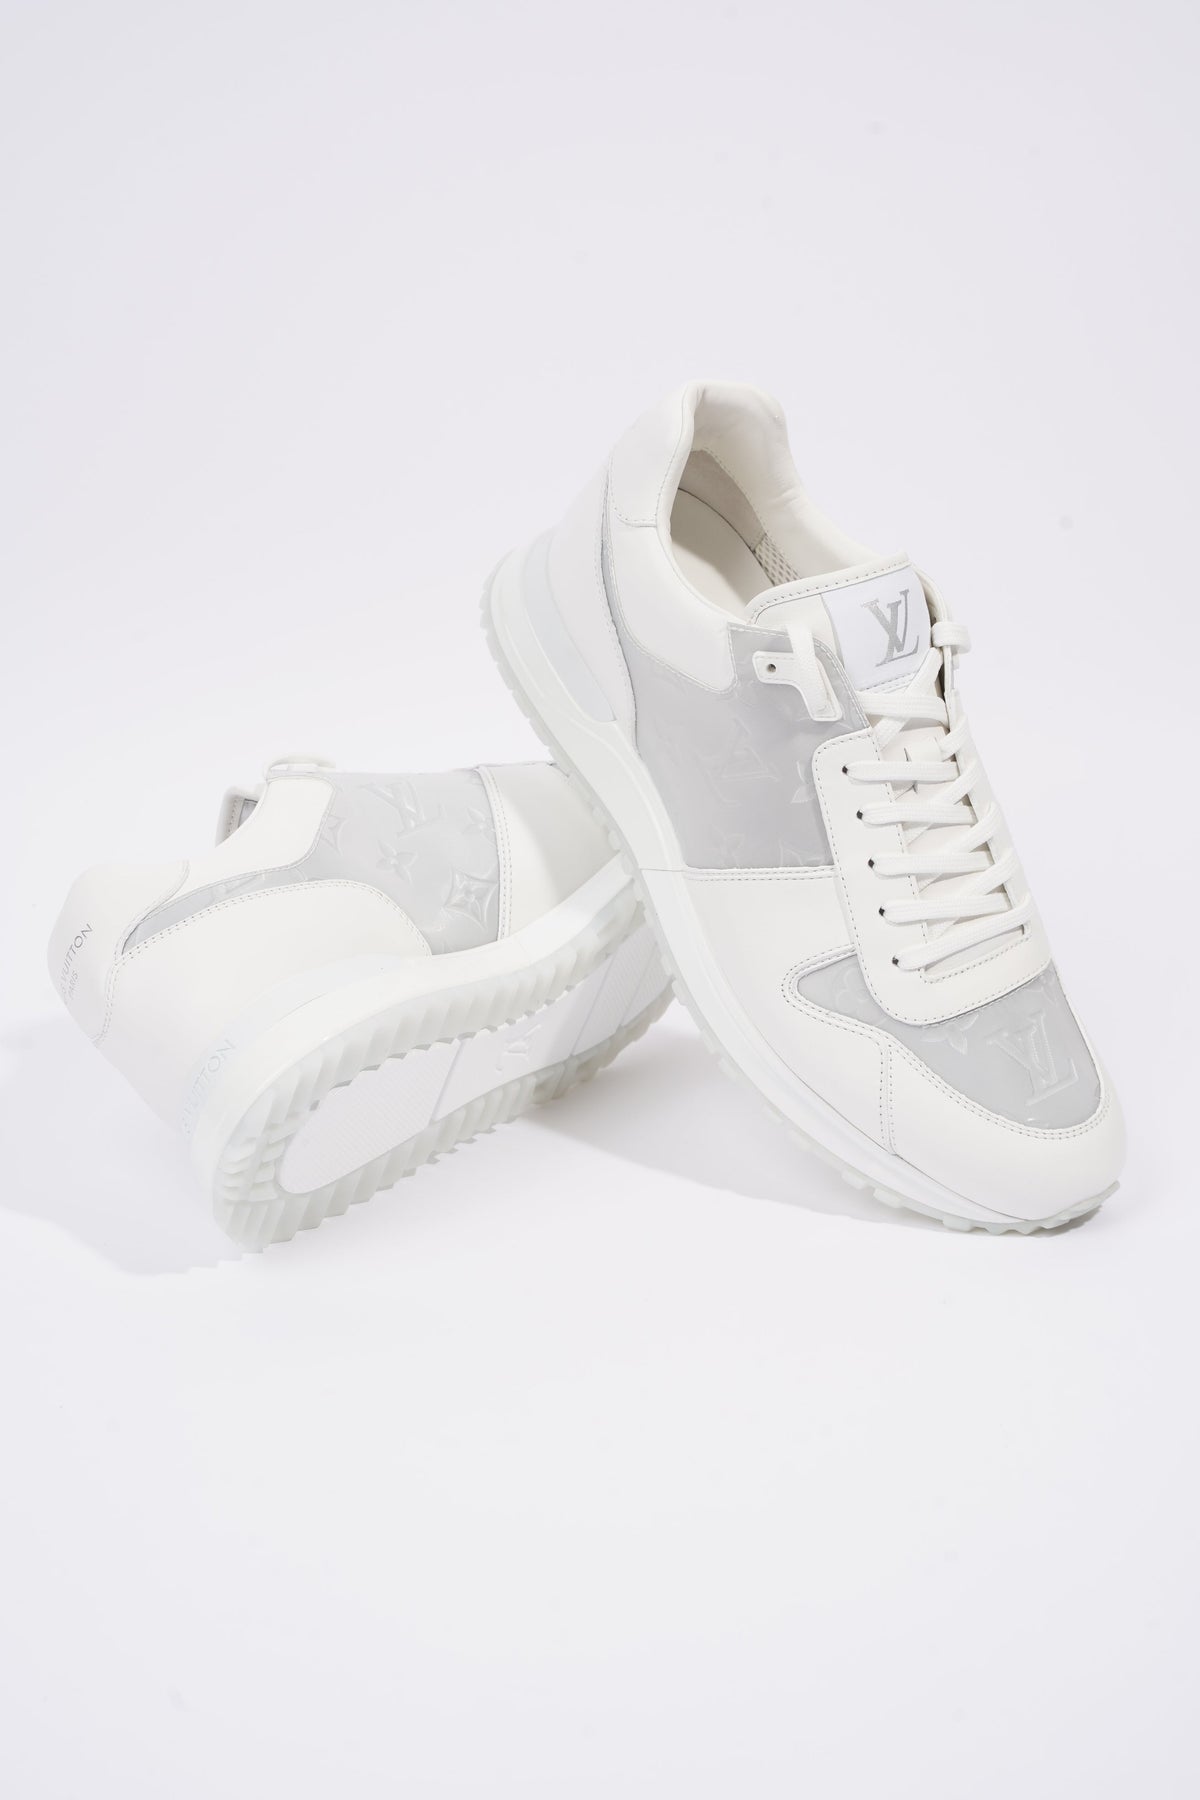 Run away trainers Louis Vuitton White size 39 EU in Fur - 32552220